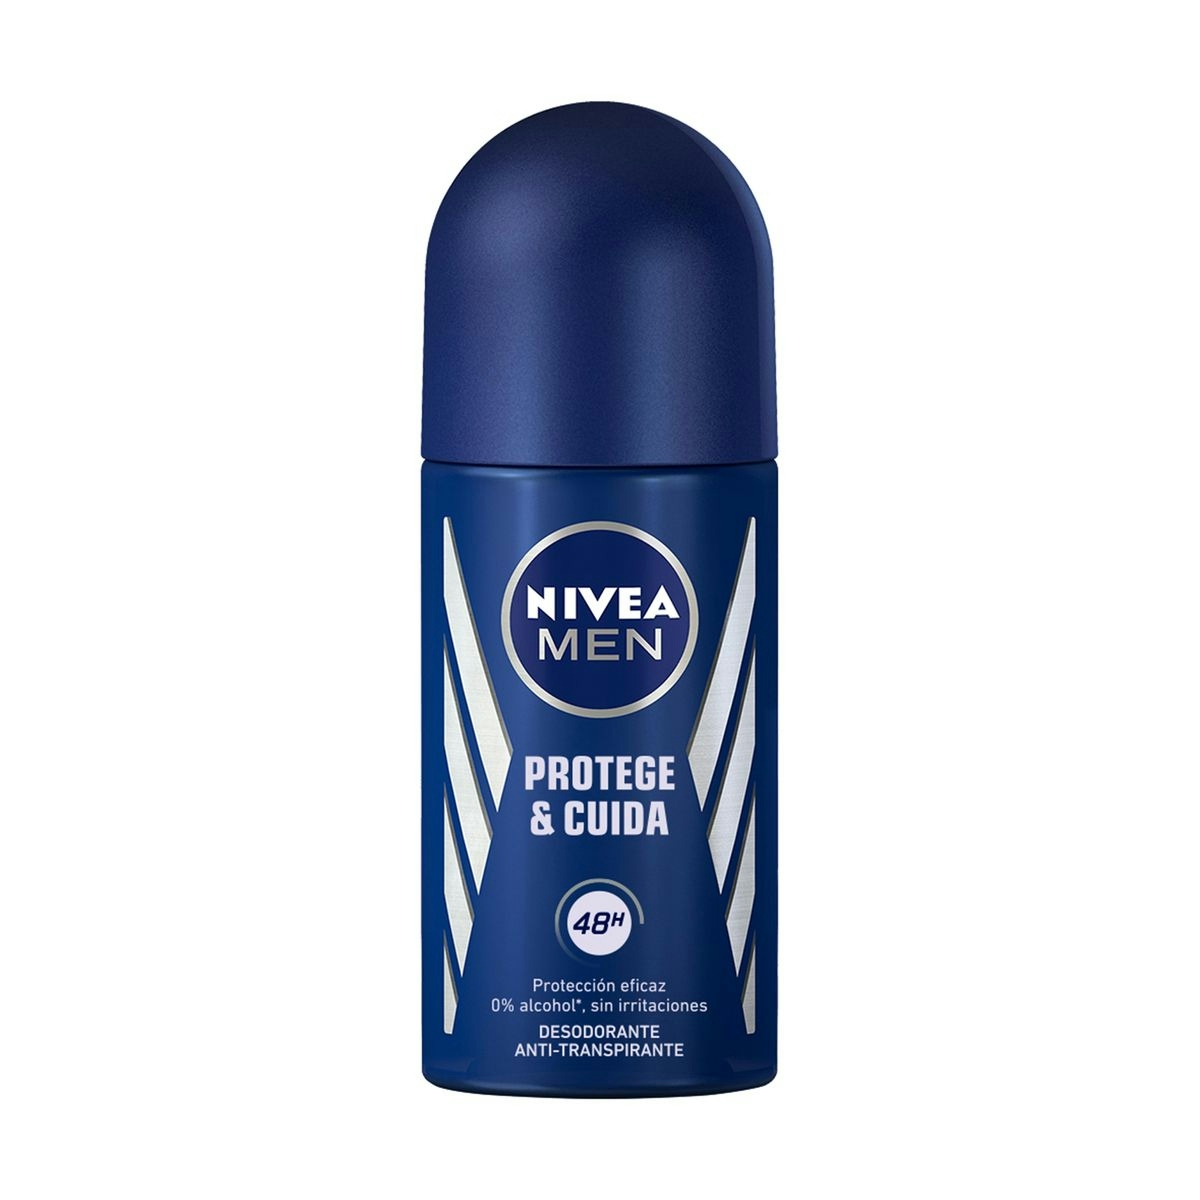 NIVEA Men desodorante protege y cuida roll on 50 ml